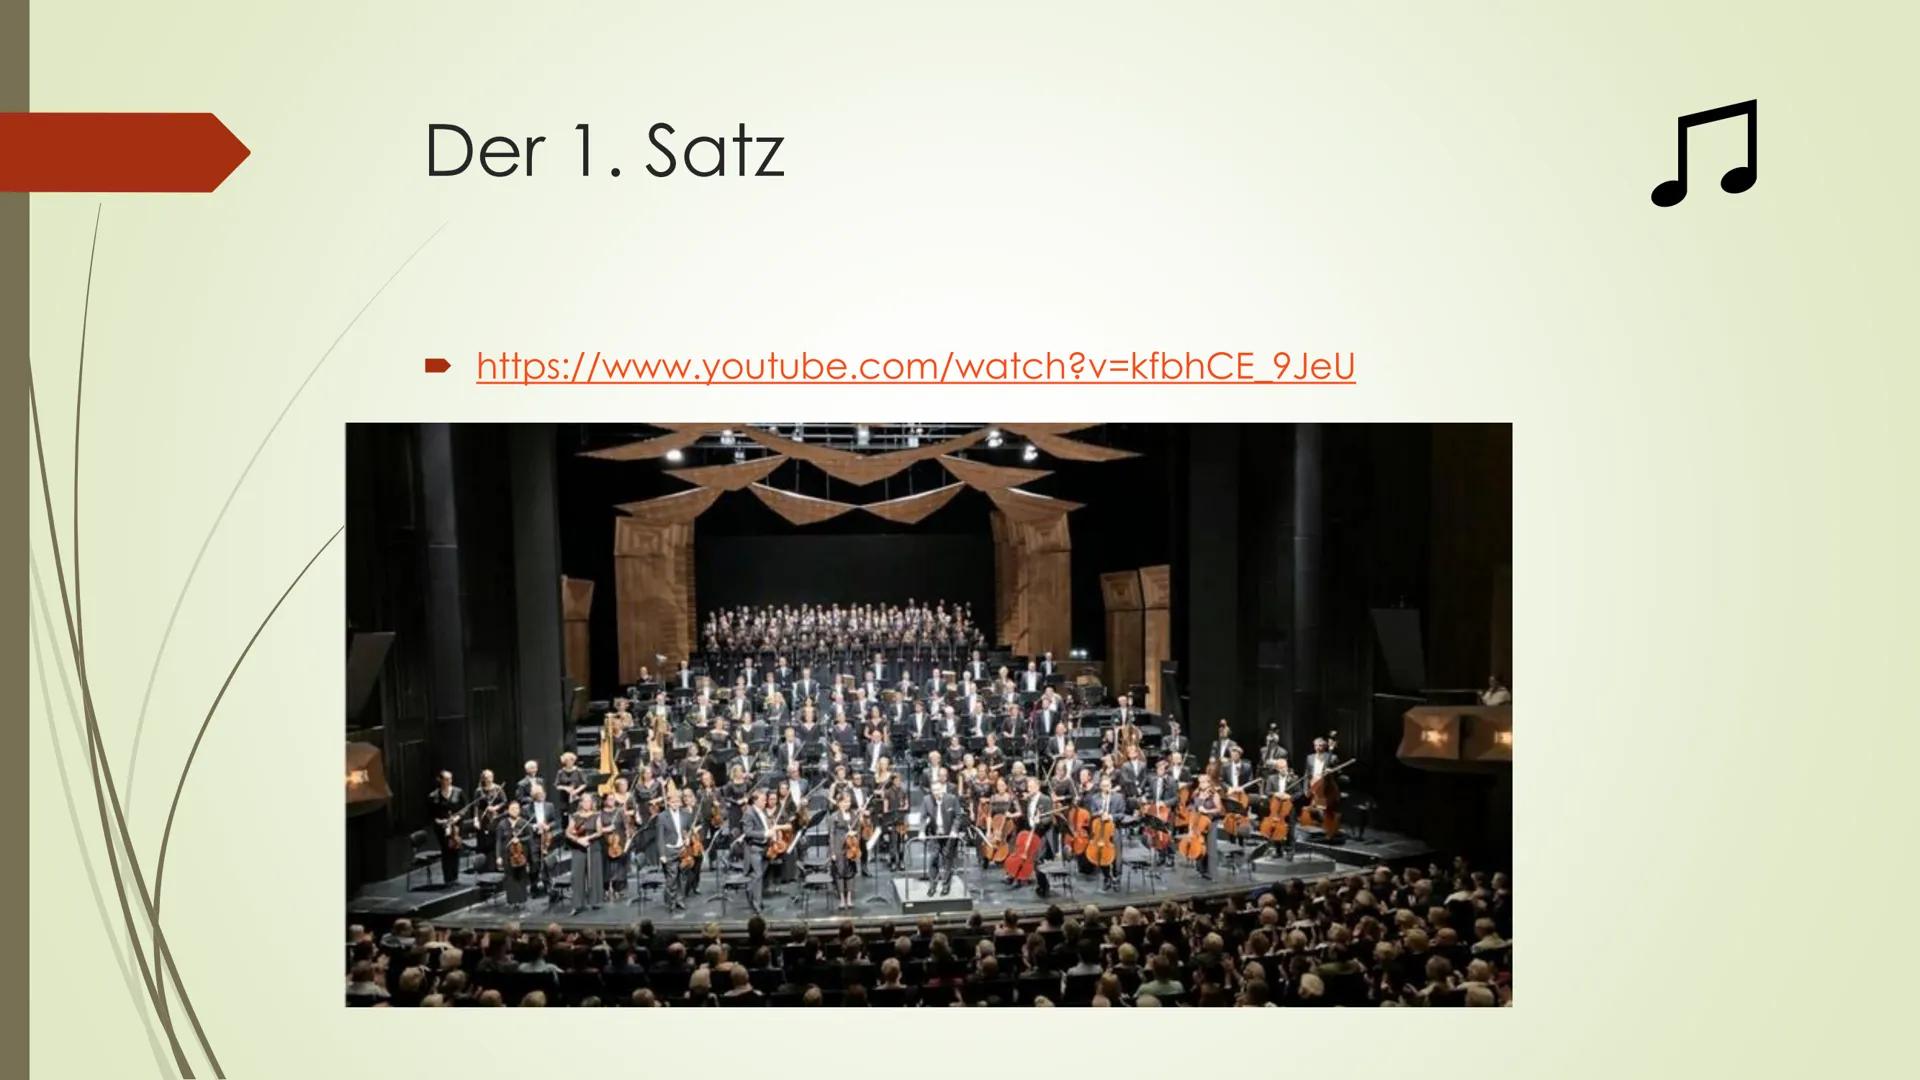 ឯ
Sinfonie: W. A. Mozart Sinfonie Nr. 41 in
C-Dur (KV 551) ,,Jupiter", 1. Satz
Andreas Kusian 10b Gliederung
► W. A. Mozart
► Werke Mozarts
